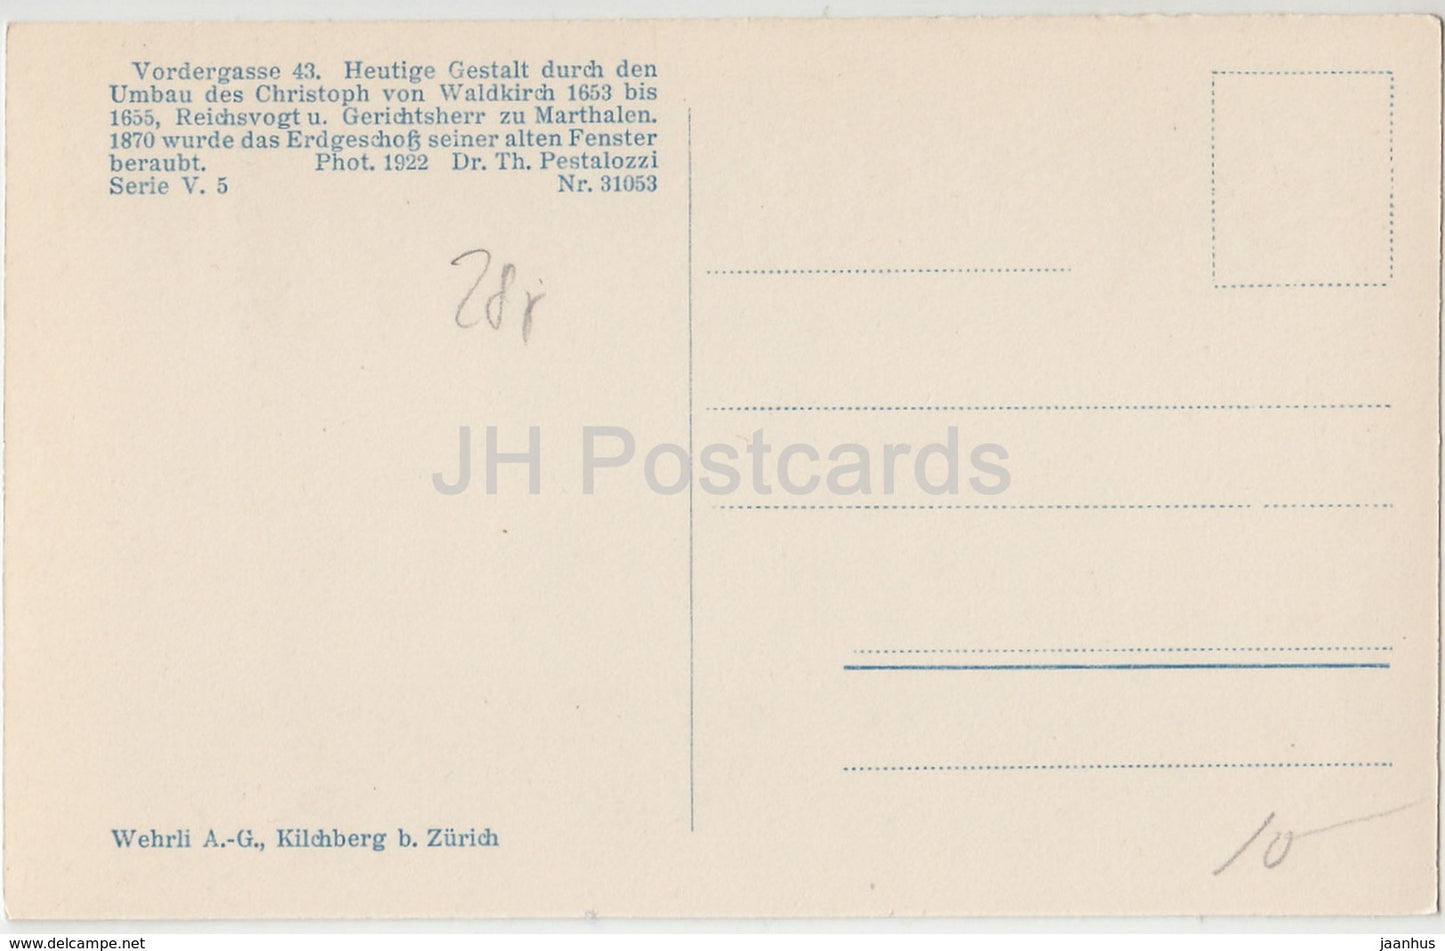 Haus zum Sittich in Schaffhausen - Switzerland - old postcard - unused